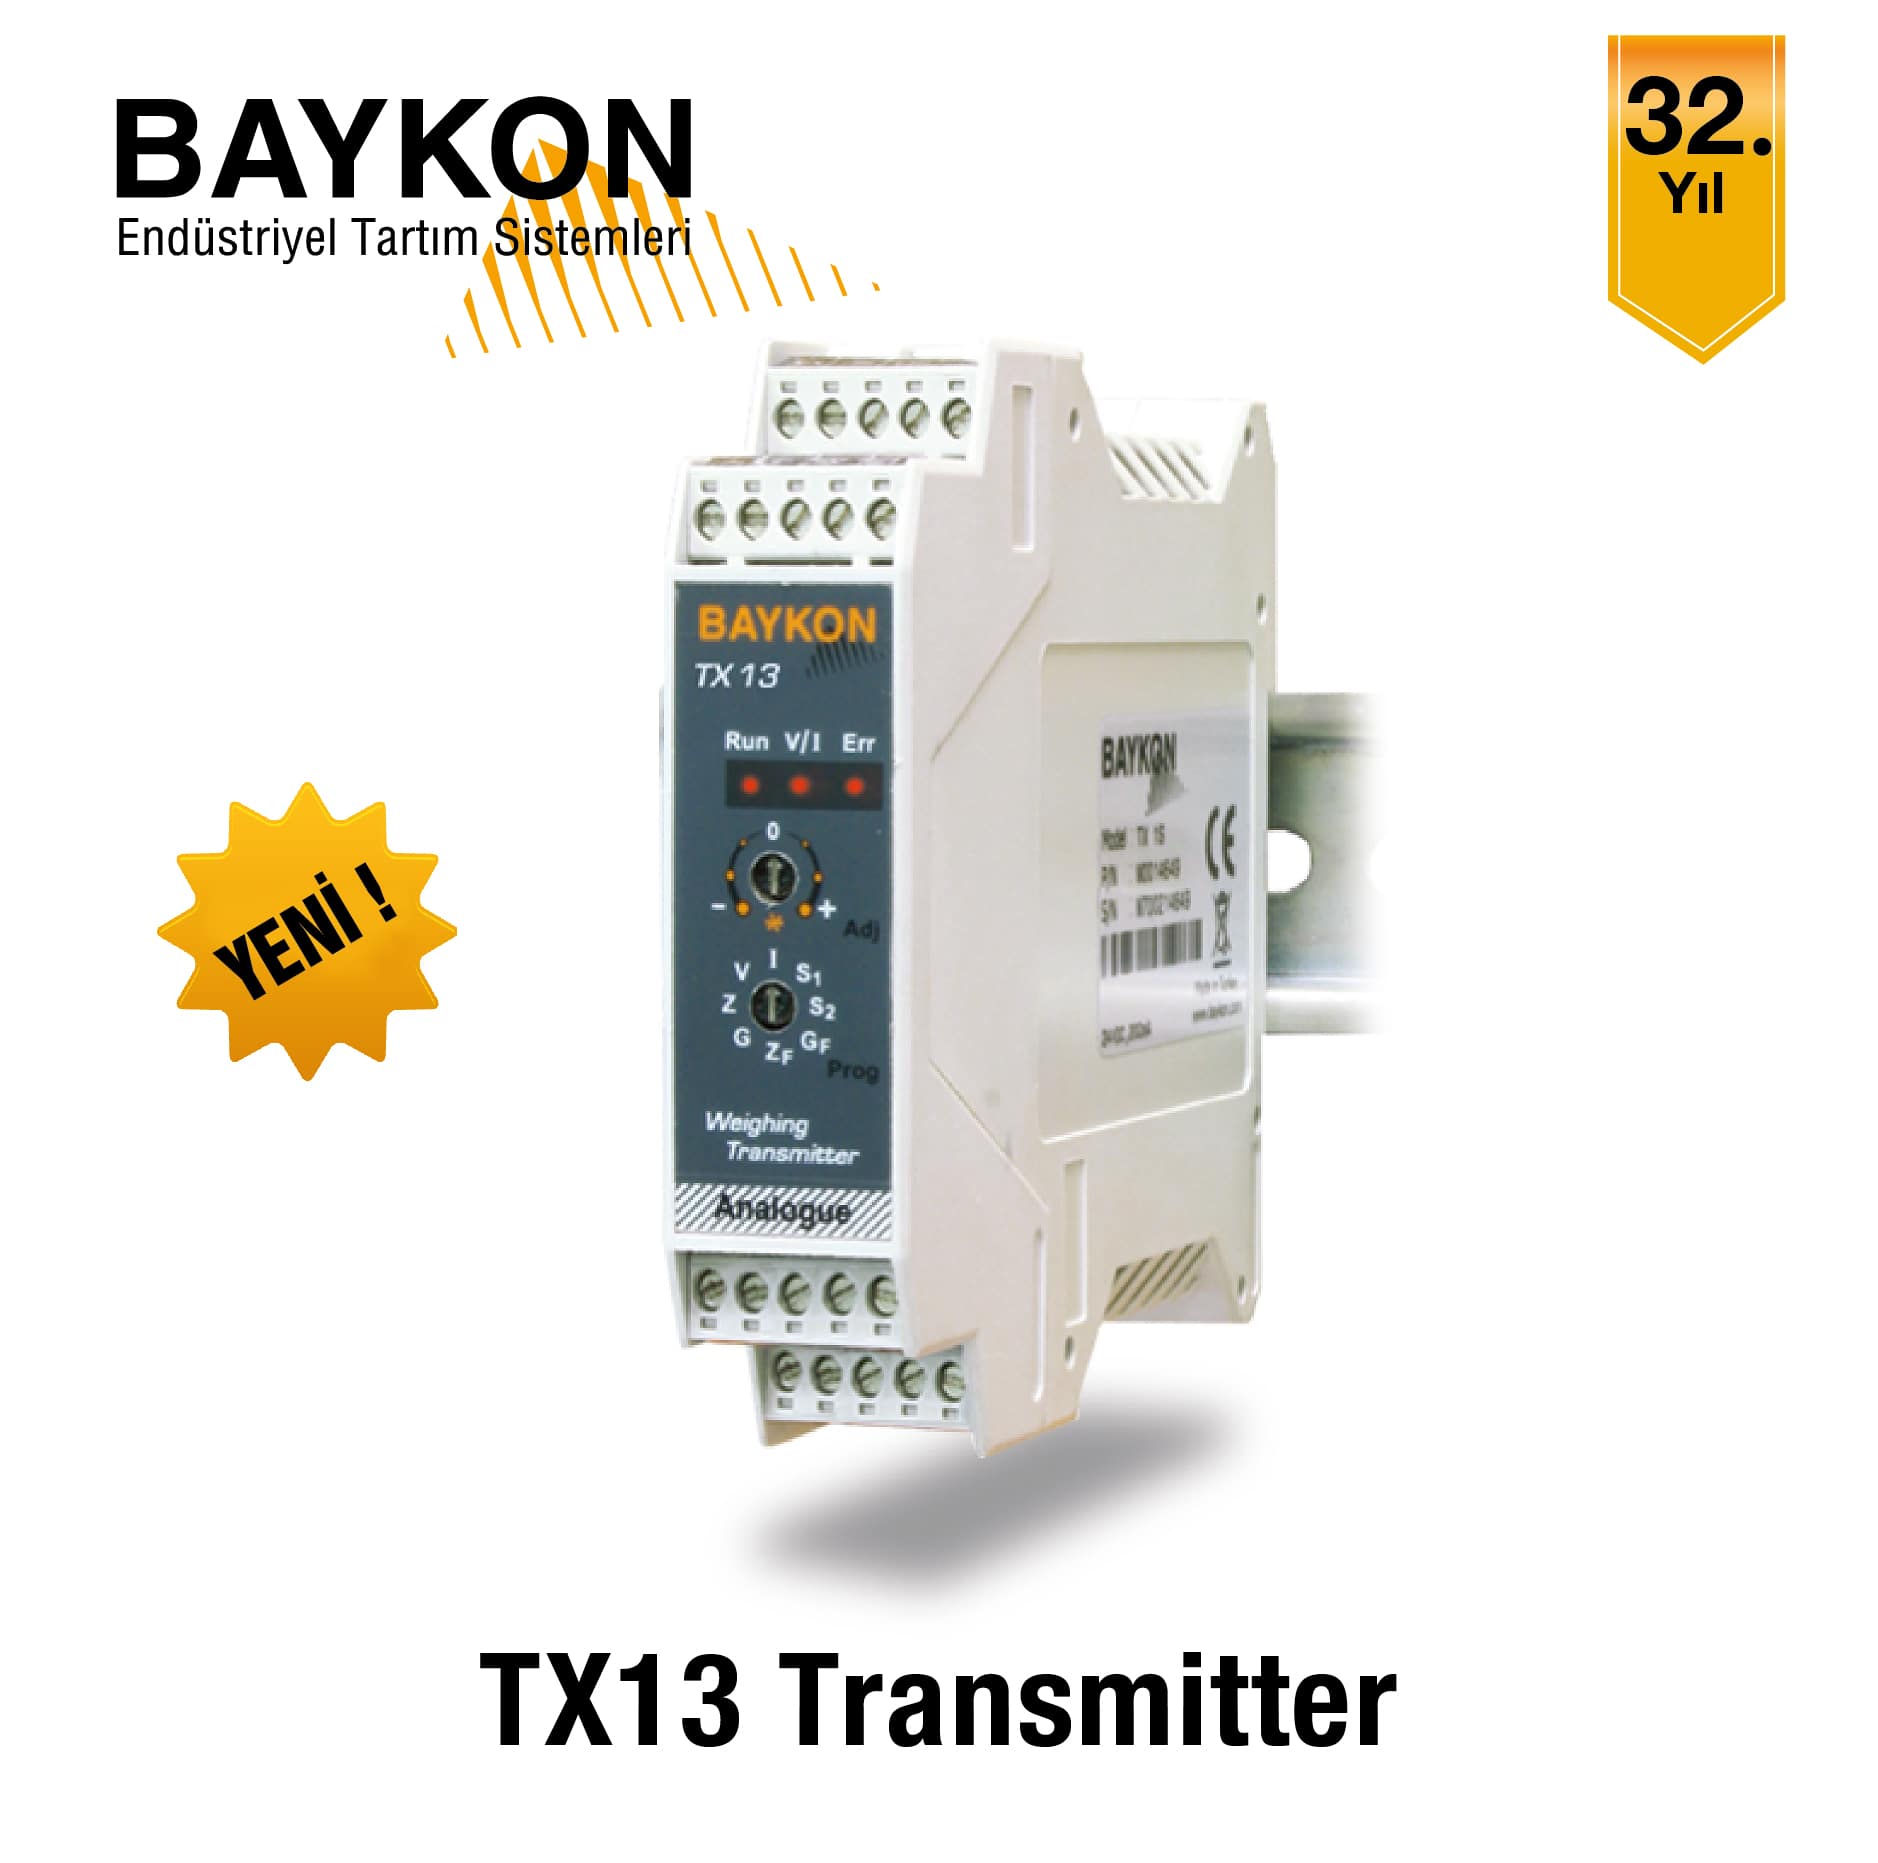 BAYKON TX13 Transmitter ile Yüksek Hassasiyetli Tartı Bilgisi!